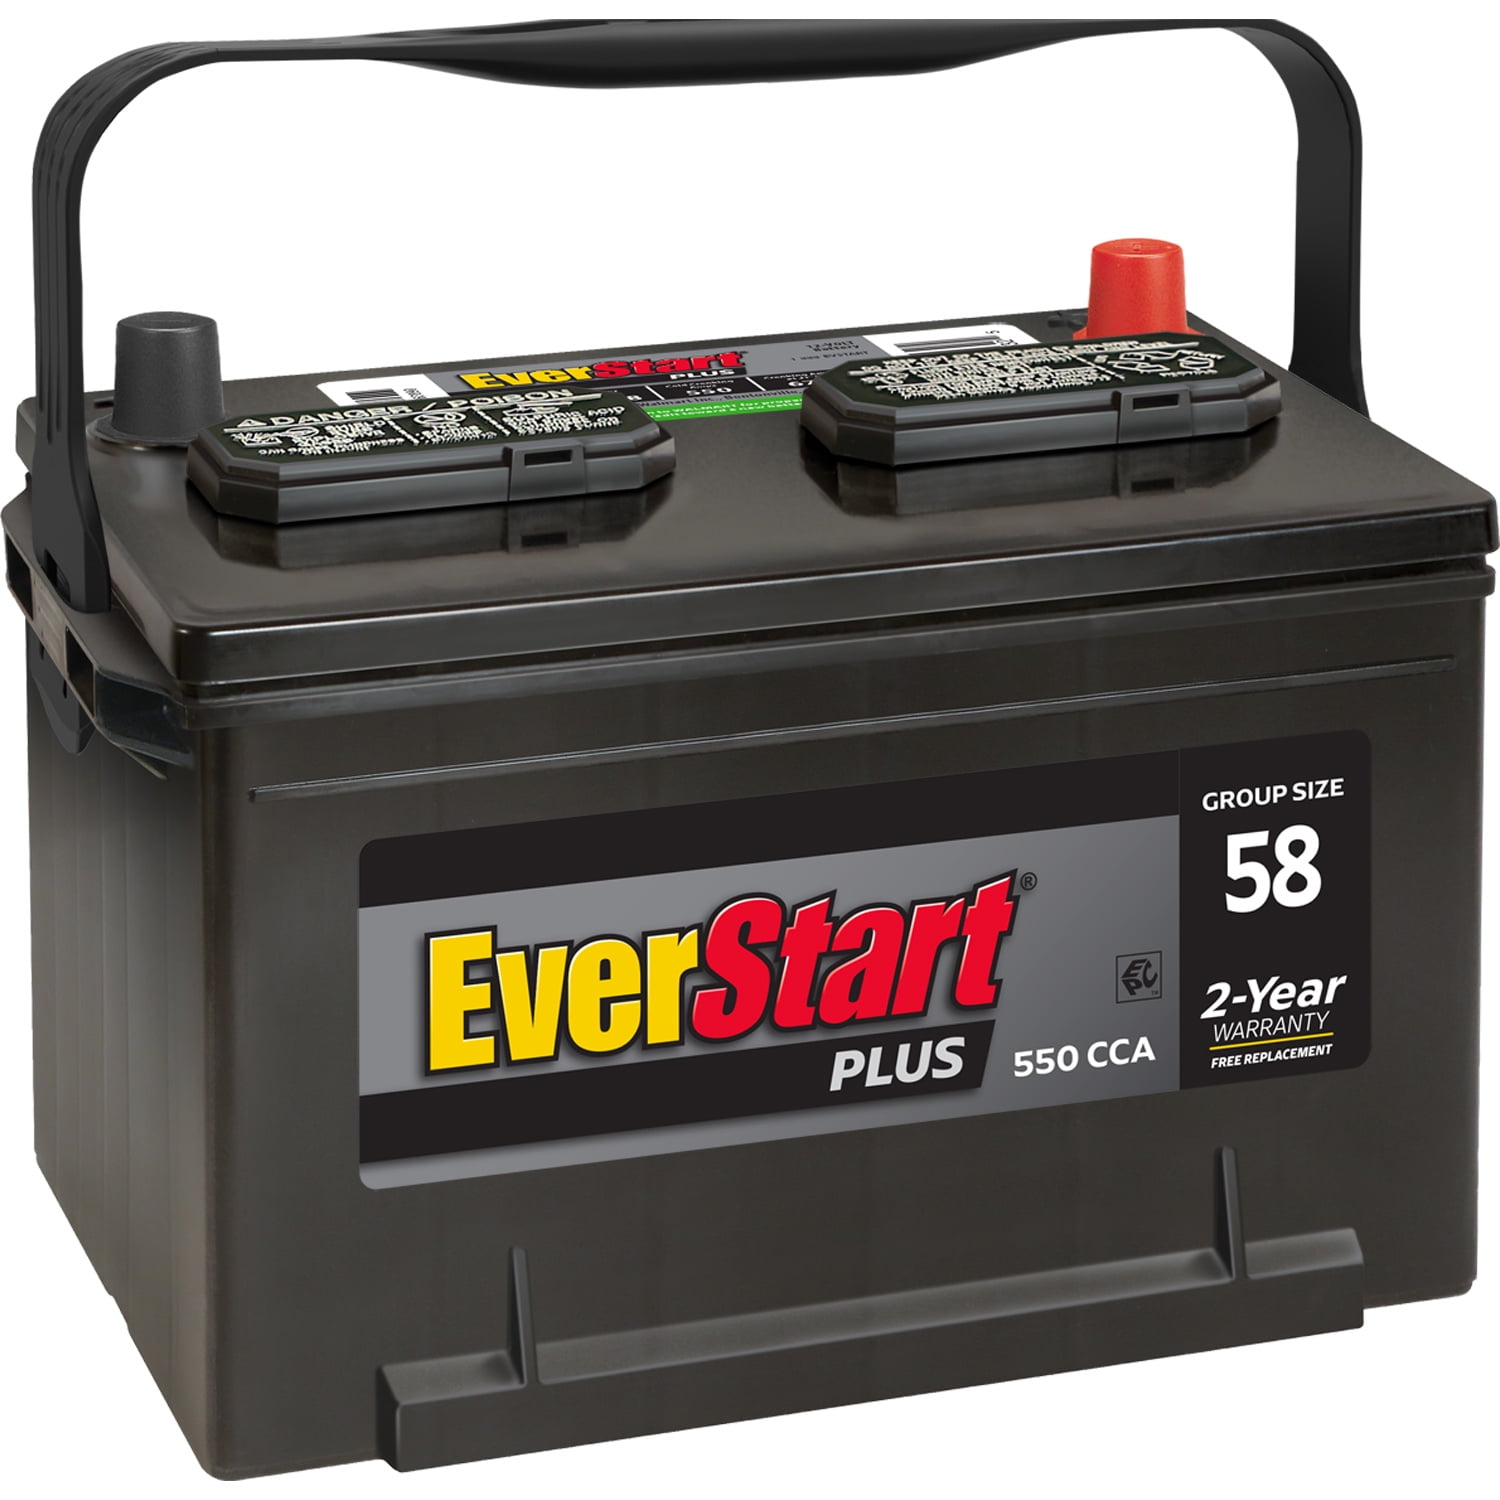 EverStart Plus Lead Acid Automotive Battery, Group Size 58 (12 Volt/550  CCA) 